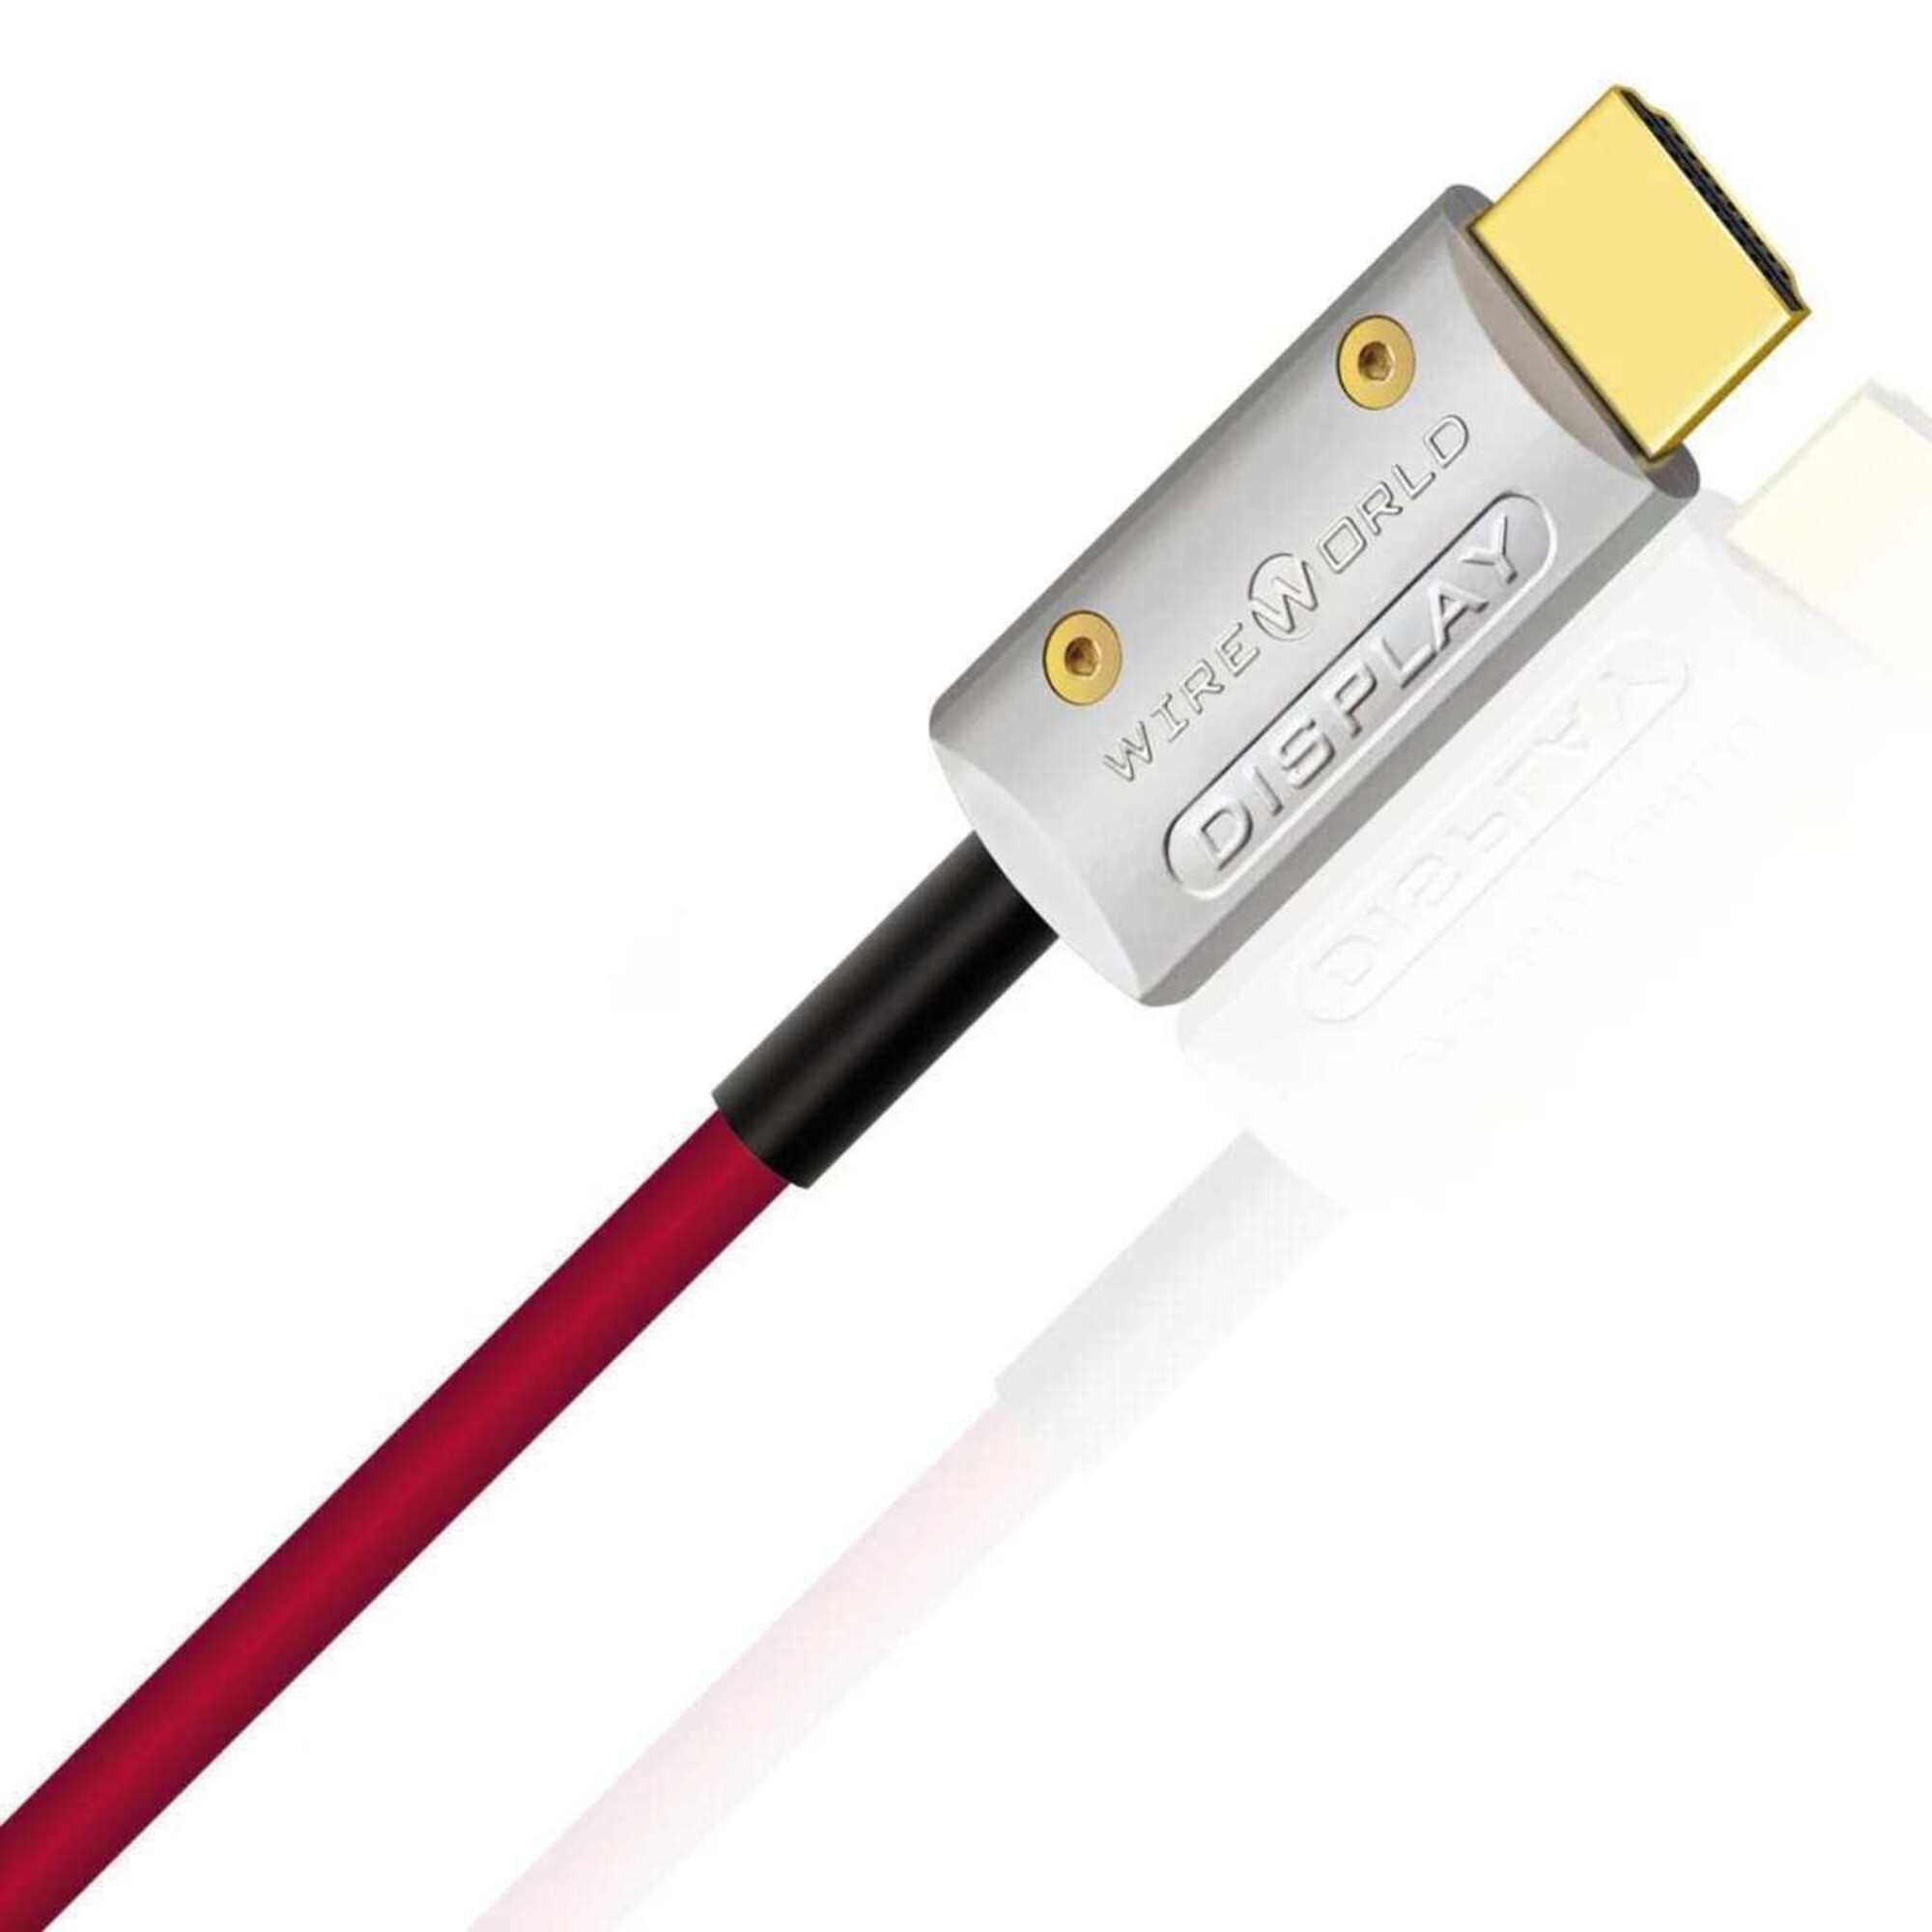 HDMI кабели Wire World Starlight HDMI - 48G/8K 5.0m силовые кабели wire world aurora 7 power cord 3 0m